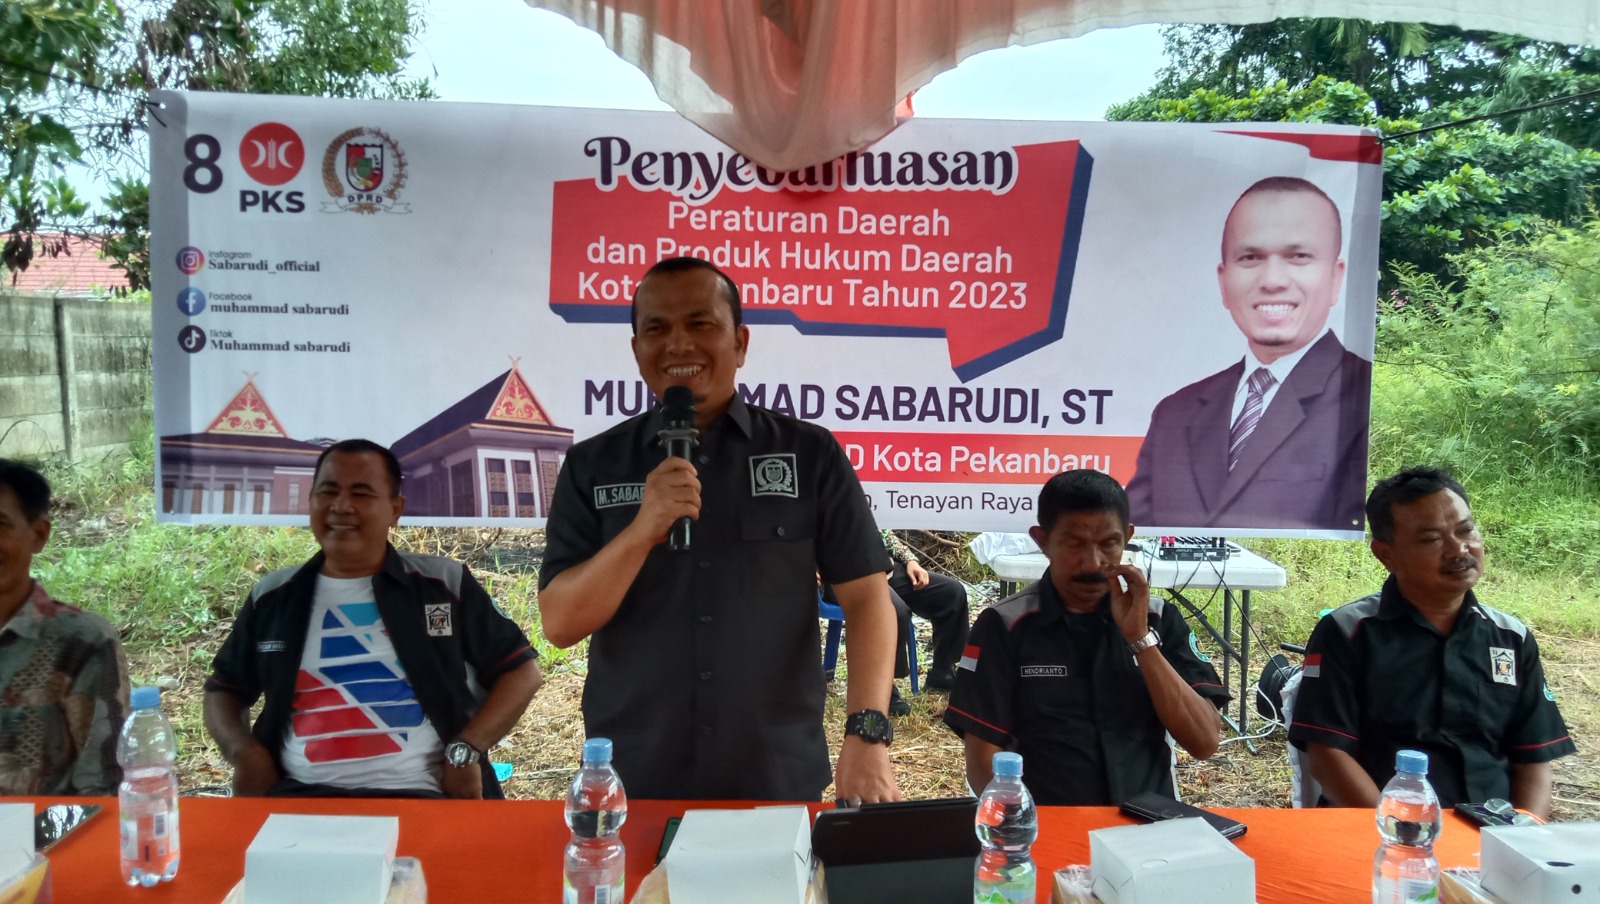 Ketua DPRD Pekanbaru M Sabarudi Laksanakan Penyebarluasan Perda di Jalan Sialang Bungkuk